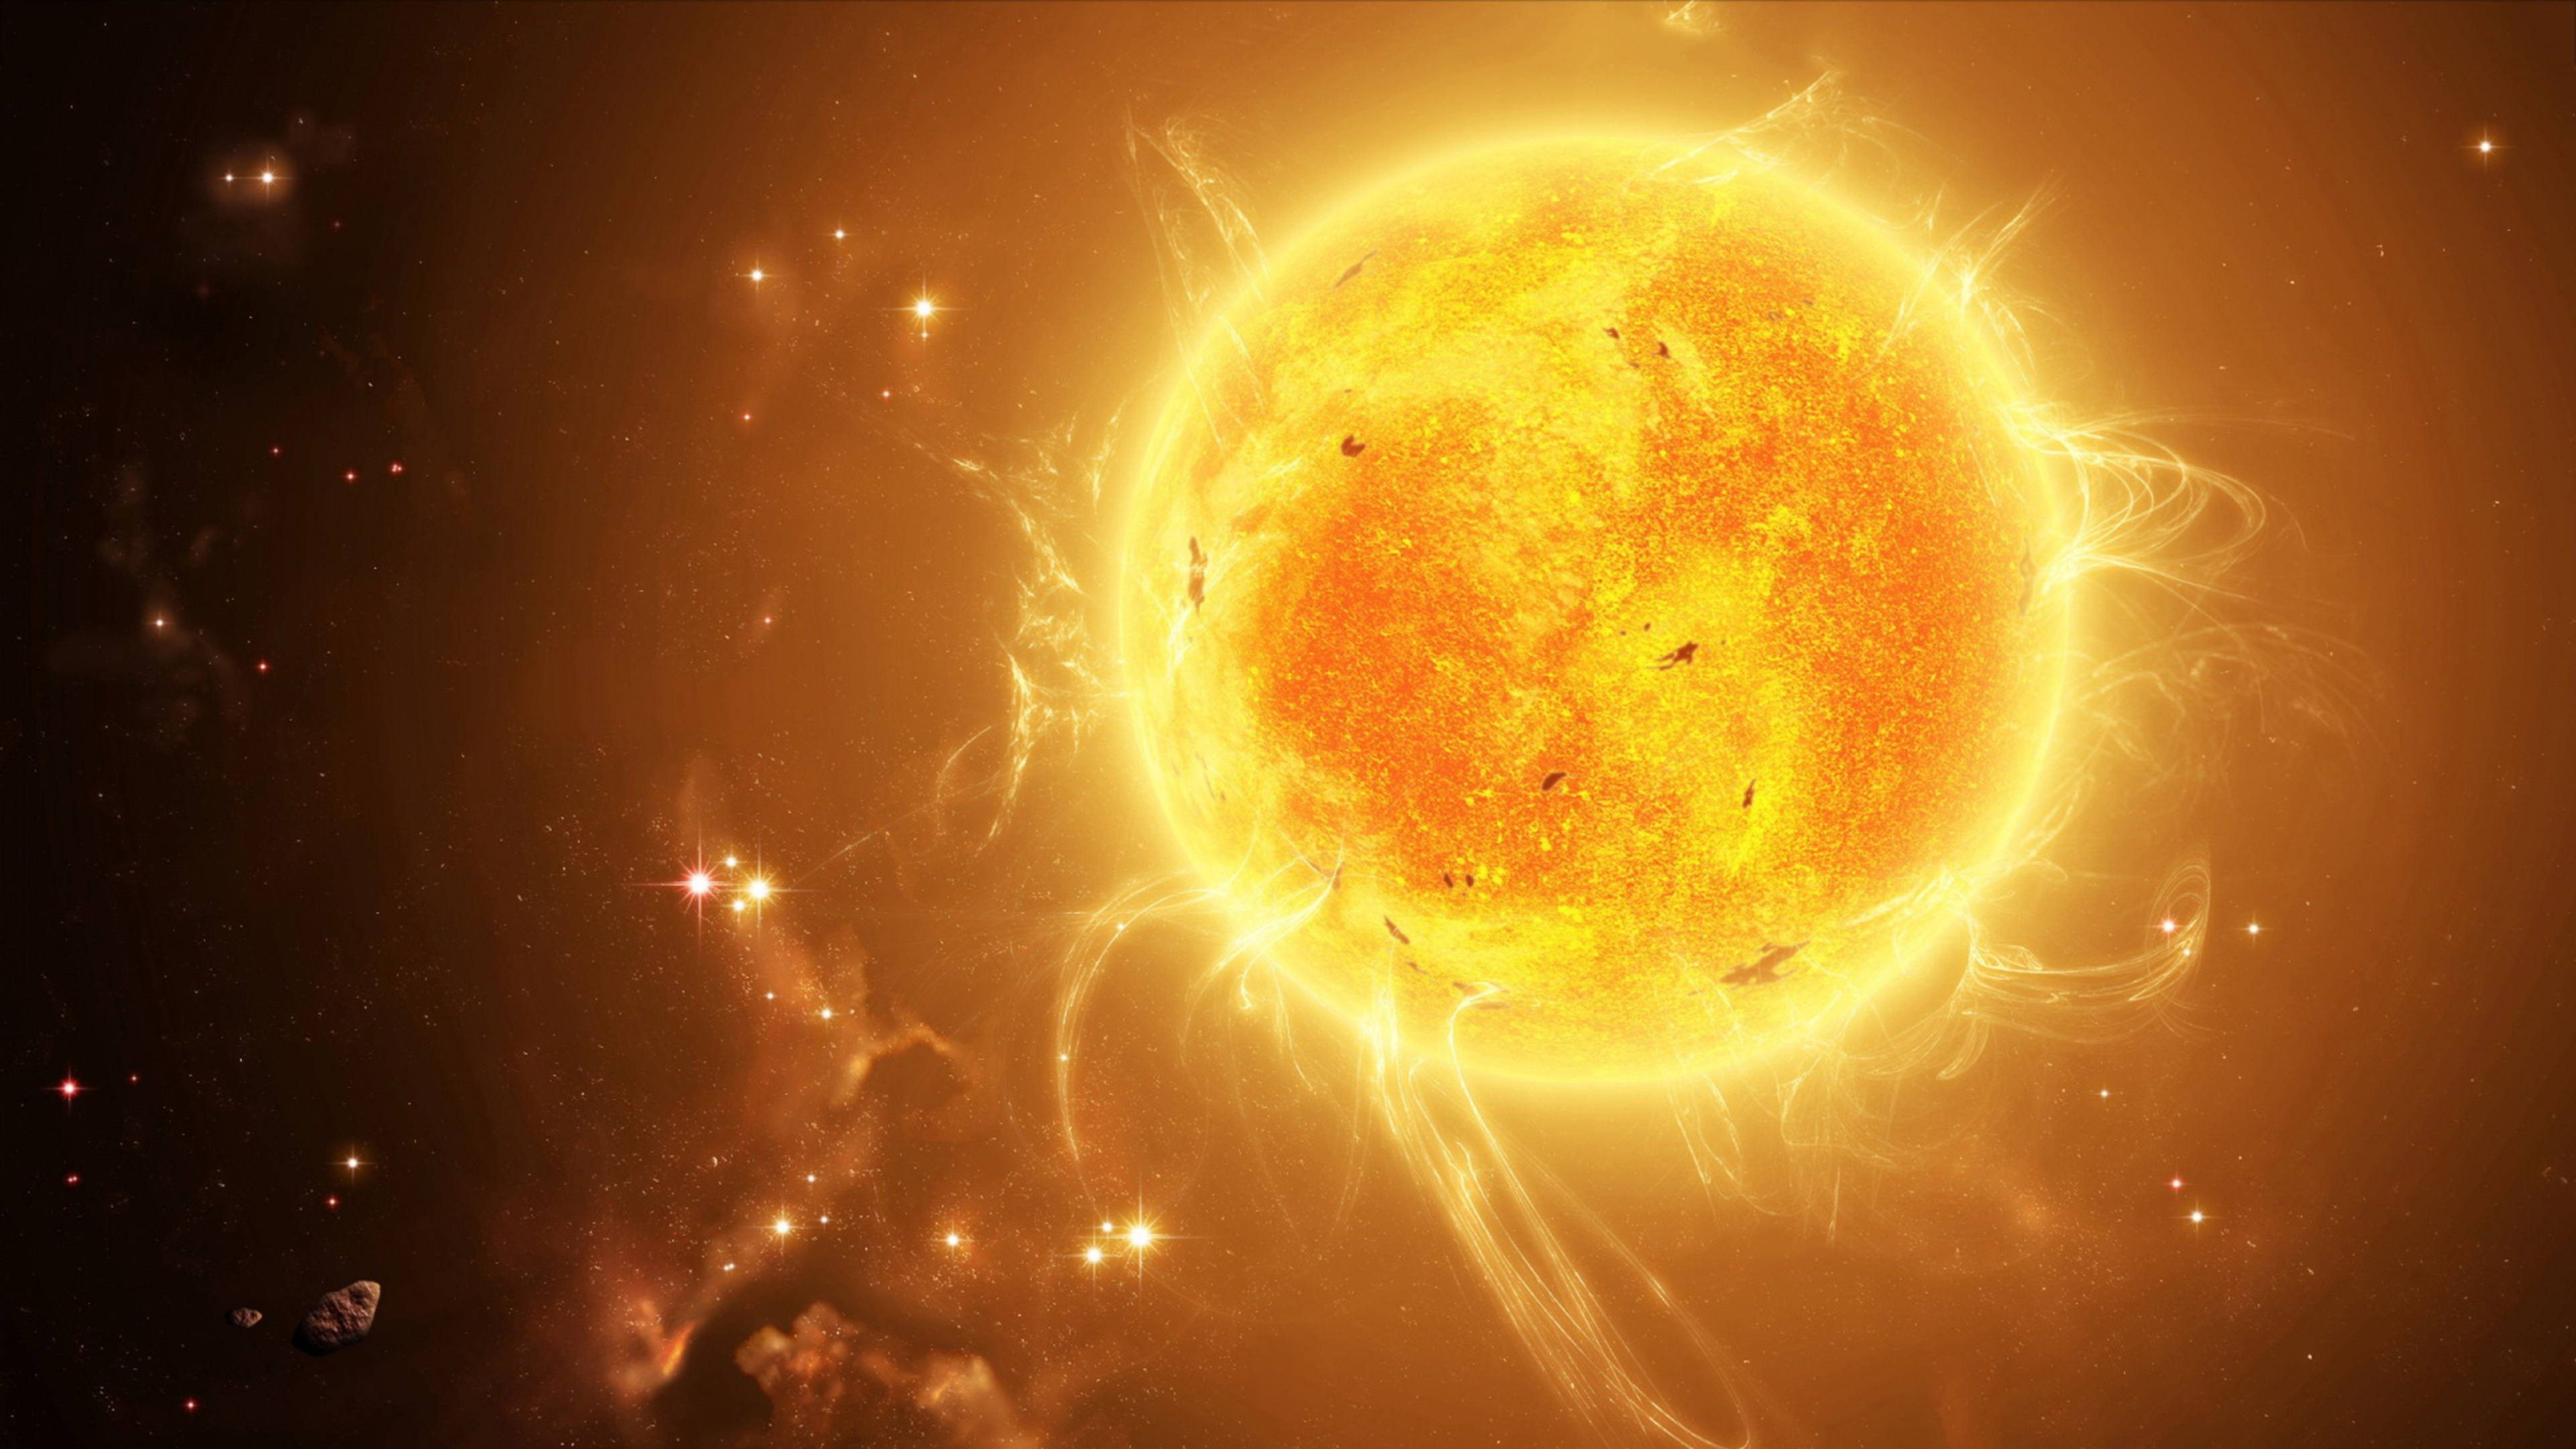 Солнце картинка для детей космос. PSR j2222-0137. Арктур звезда. Солнце. Солнце в космосе.